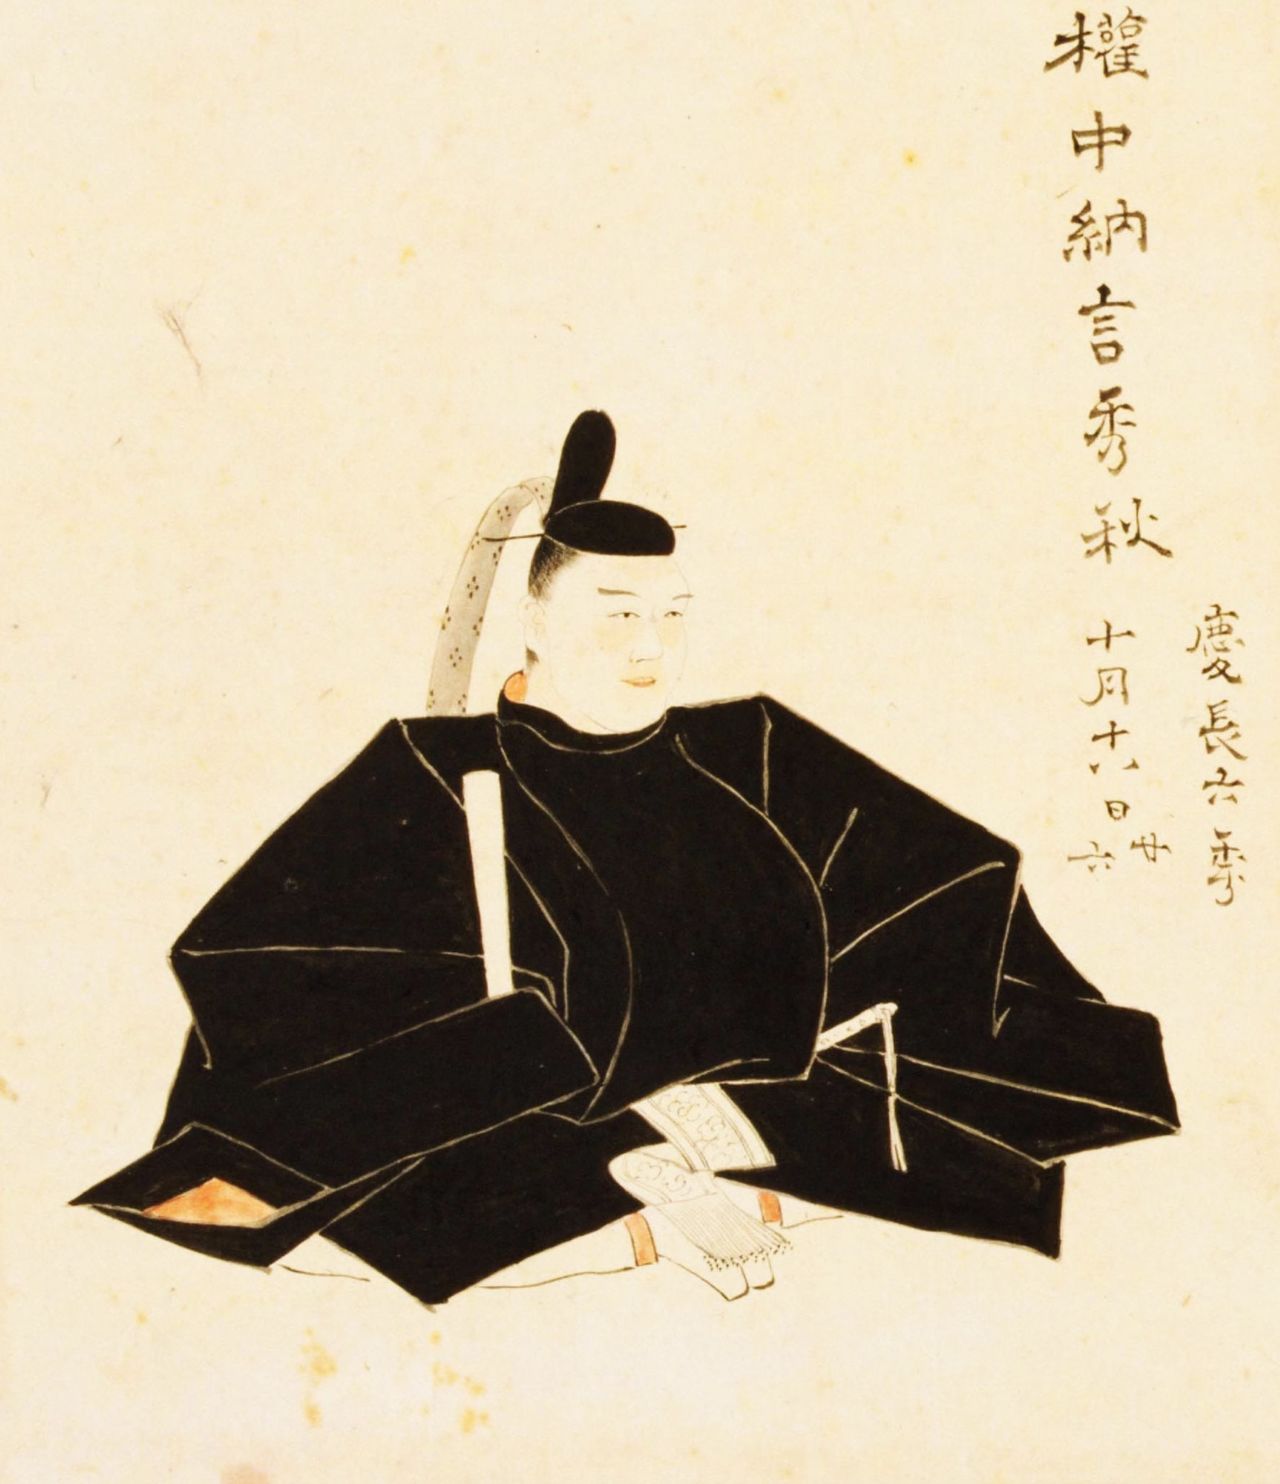 صورة لكوباياكاوا هيديأكي رسمها الفنان كوريهارا نوبوميتسو (بإذن من مكتبة البرلمان القومية).